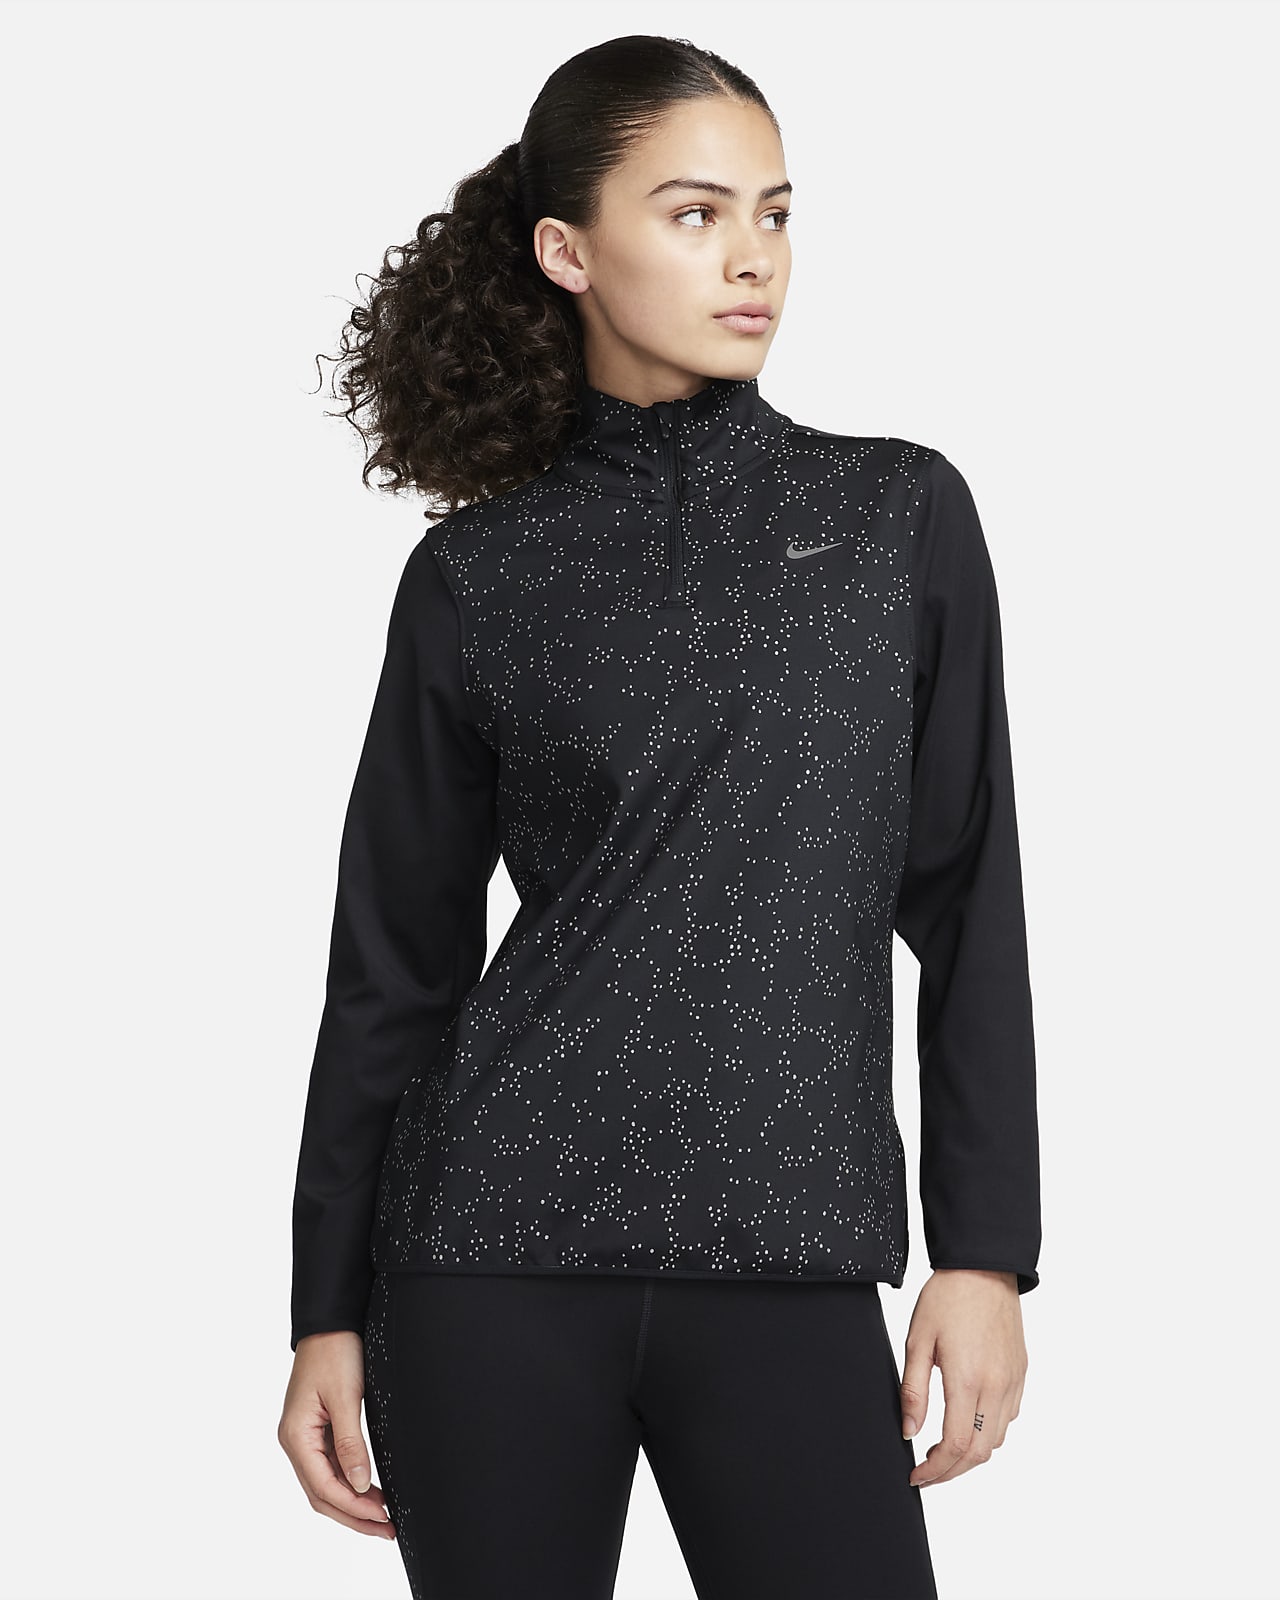 Löpartröja med kvartslång dragkedja Nike Swift för kvinnor